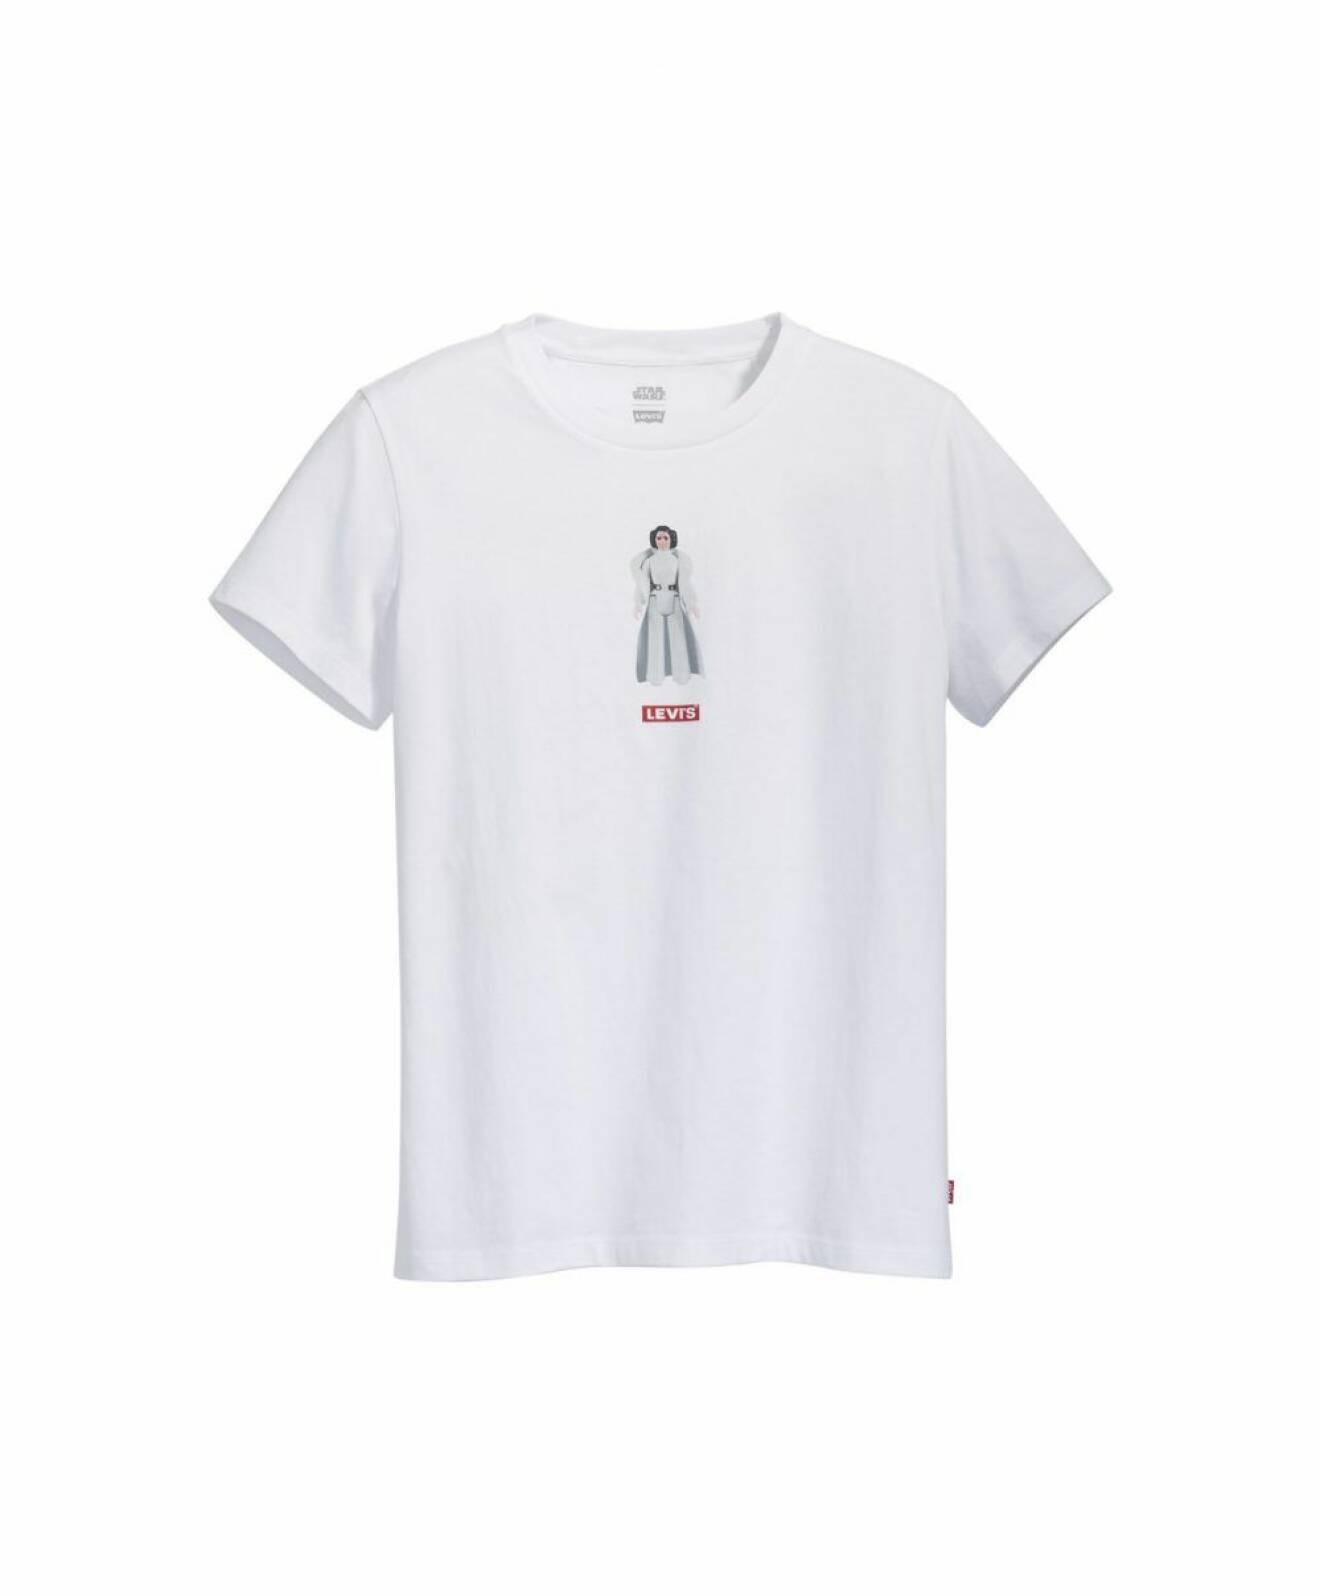 Levis kollektion med Star Wars t-shirt